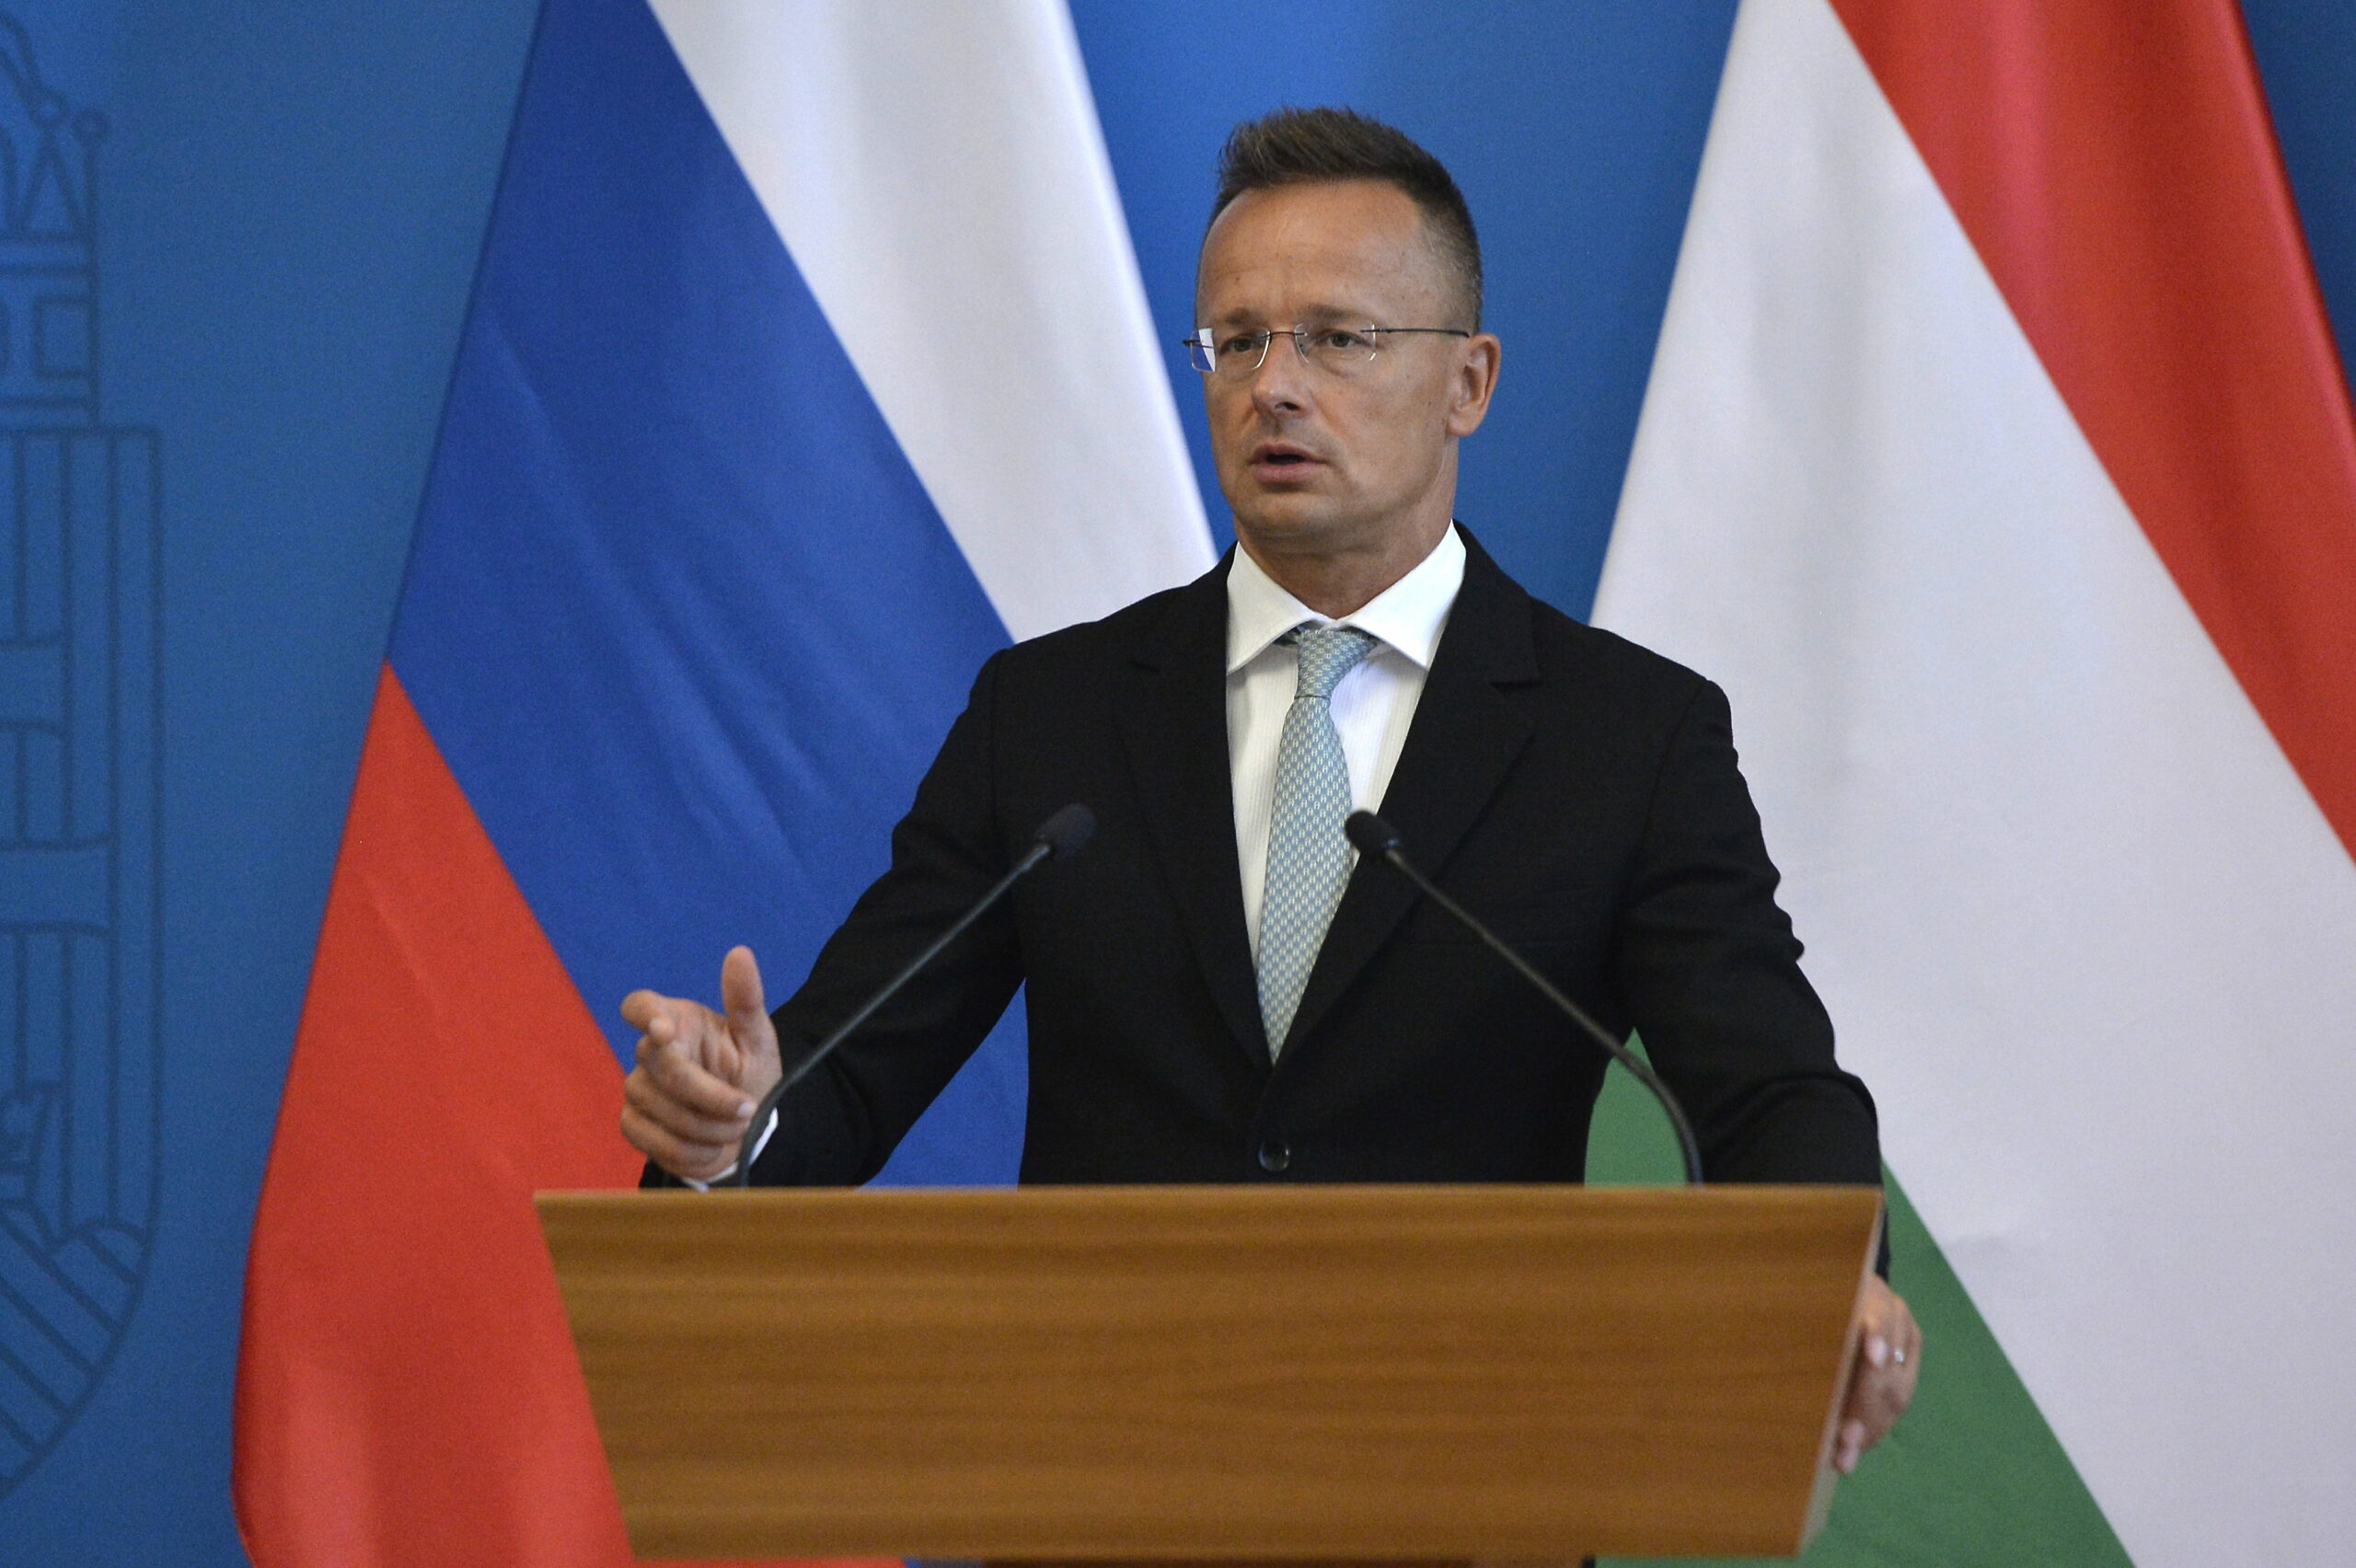 Szijjártó Pétert arról kérdezik, bekéreti-e az orosz nagykövetet a tankönyv miatt, ami szerint hiba volt kivonulni Magyarországról